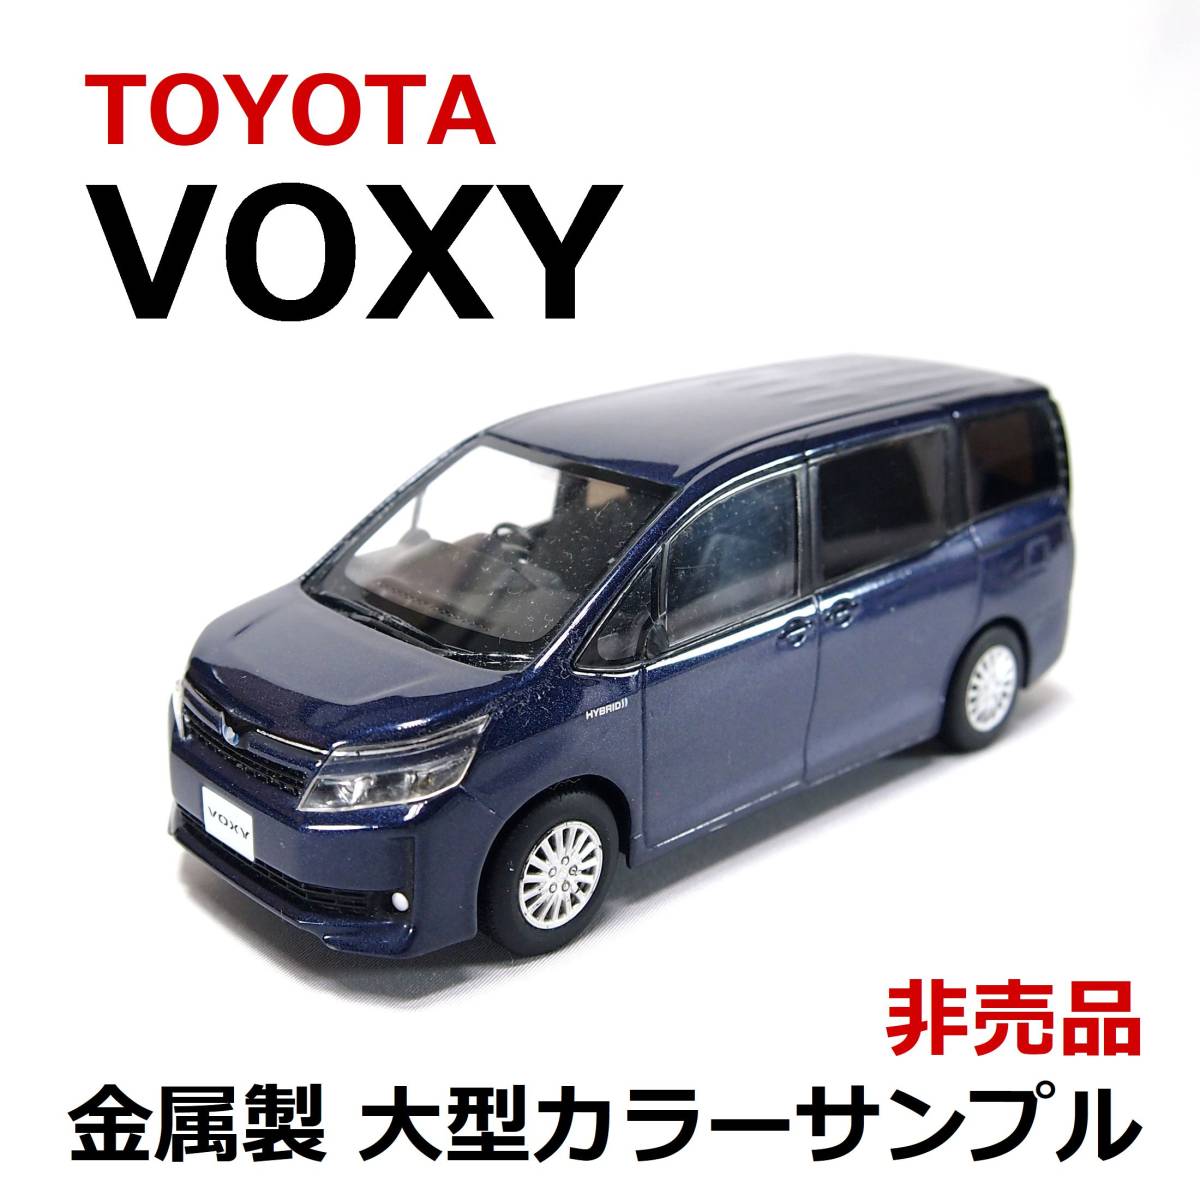 海外ブランド 新型ヴォクシー カラーサンプルミニカー 非売品 ⑥ voxy